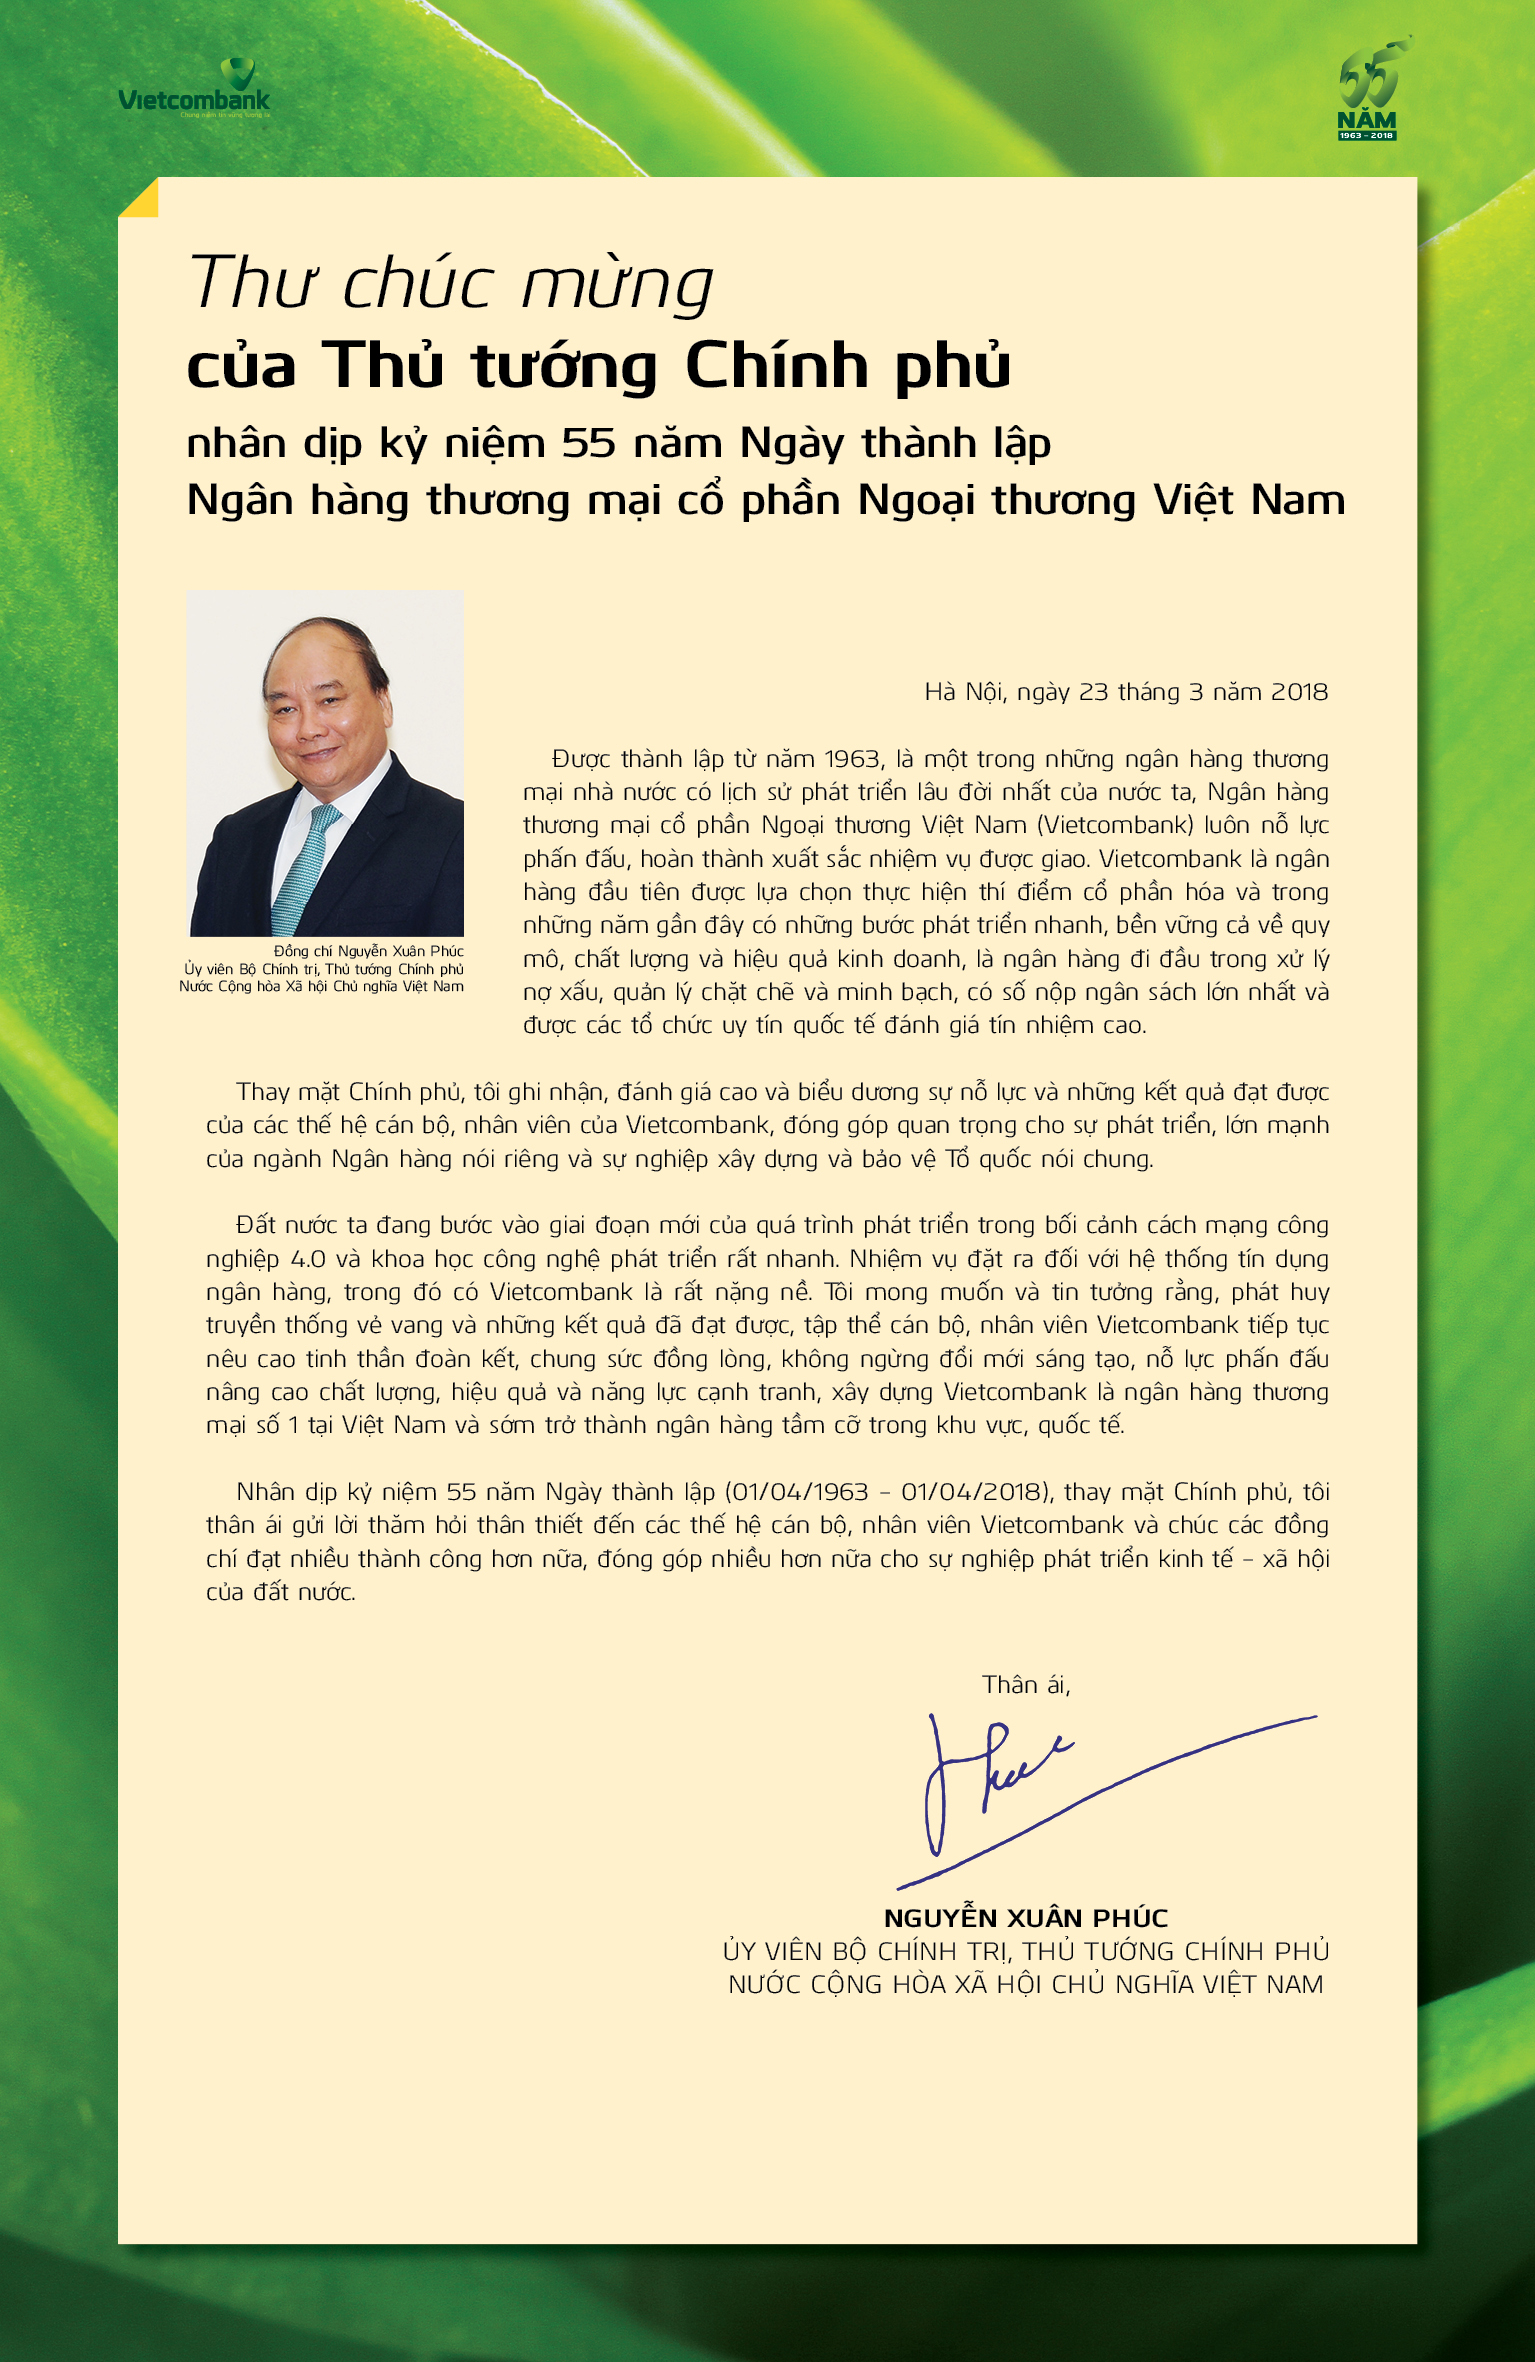 Thư chúc mừng của Thủ tướng Chính phủ nhân dịp kỷ niệm 55 năm ngày thành lập Vietcombank